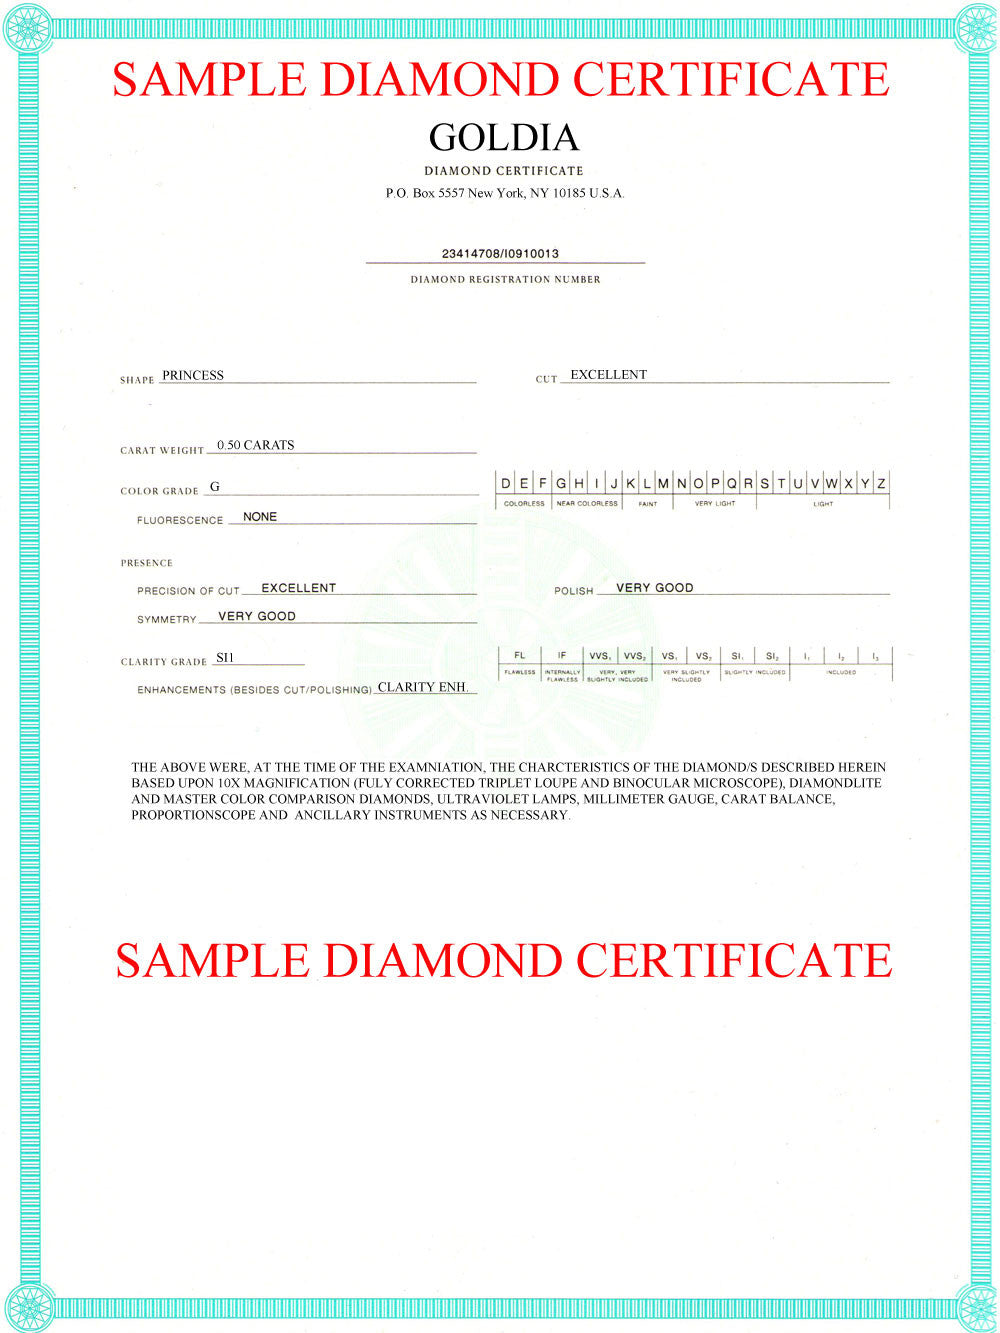 Certified 1.0 CTW Diamond Stud Earrings in 14kt White Gold